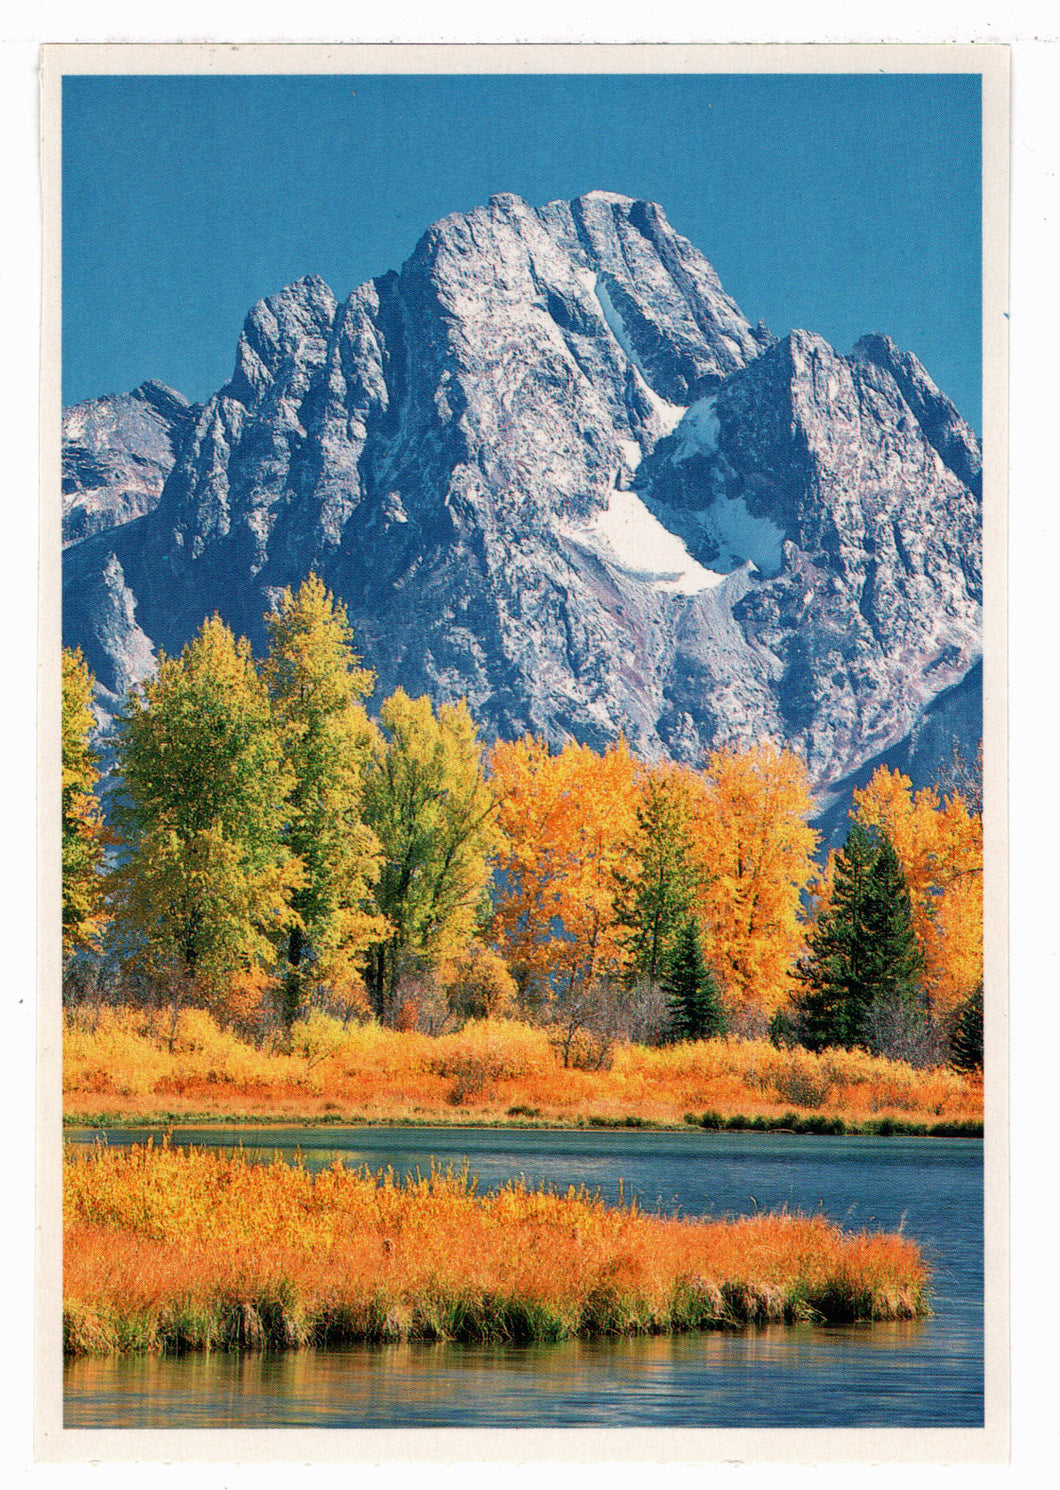 Mountain Range in Autumn, USA Vintage Original Postcard # 4533 - 1970's